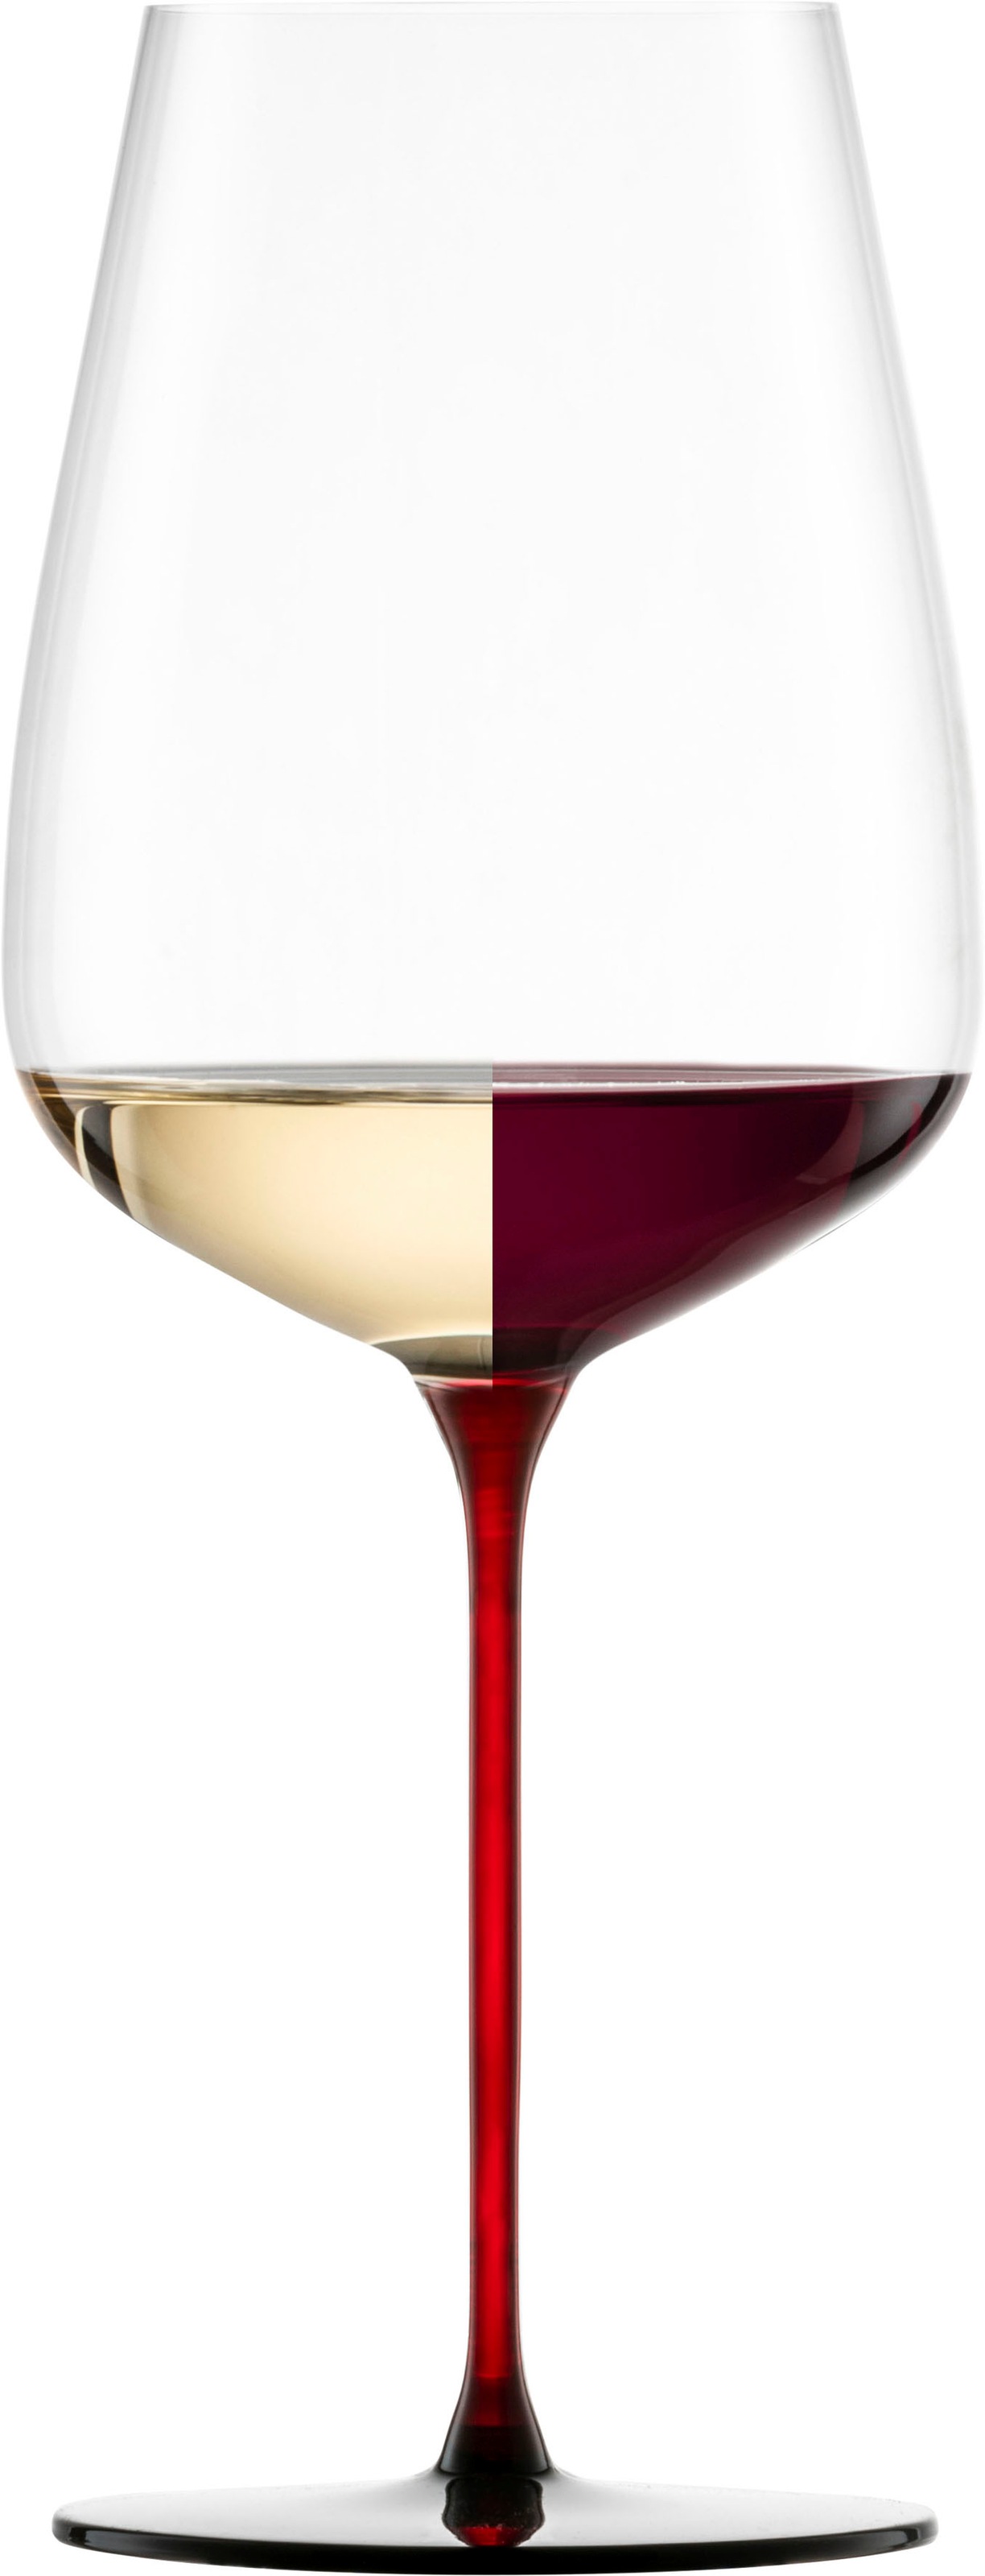 Eisch Weinglas »RED SENSISPLUS«, (Set, 2 tlg., 2 Gläser im Geschenkkarton), 740 ml, Handarbeit, 2-teilig, Made in Germany